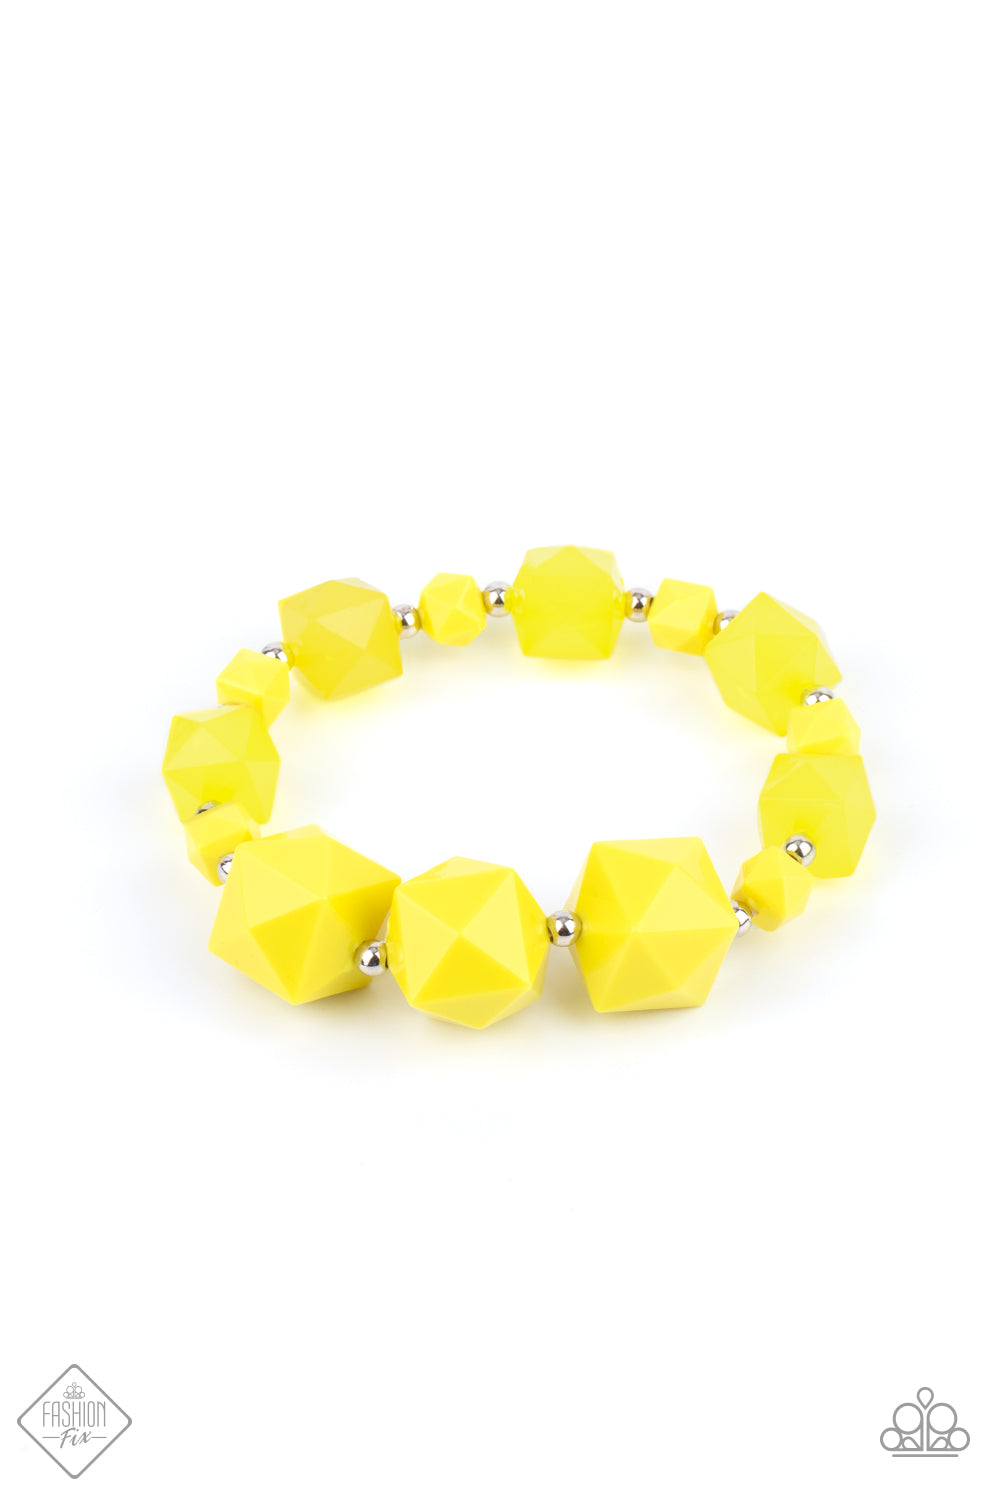 Paparazzi Trendsetting Tourist - Yellow Fashion Fix Bracelet - A Finishing Touch Jewelry